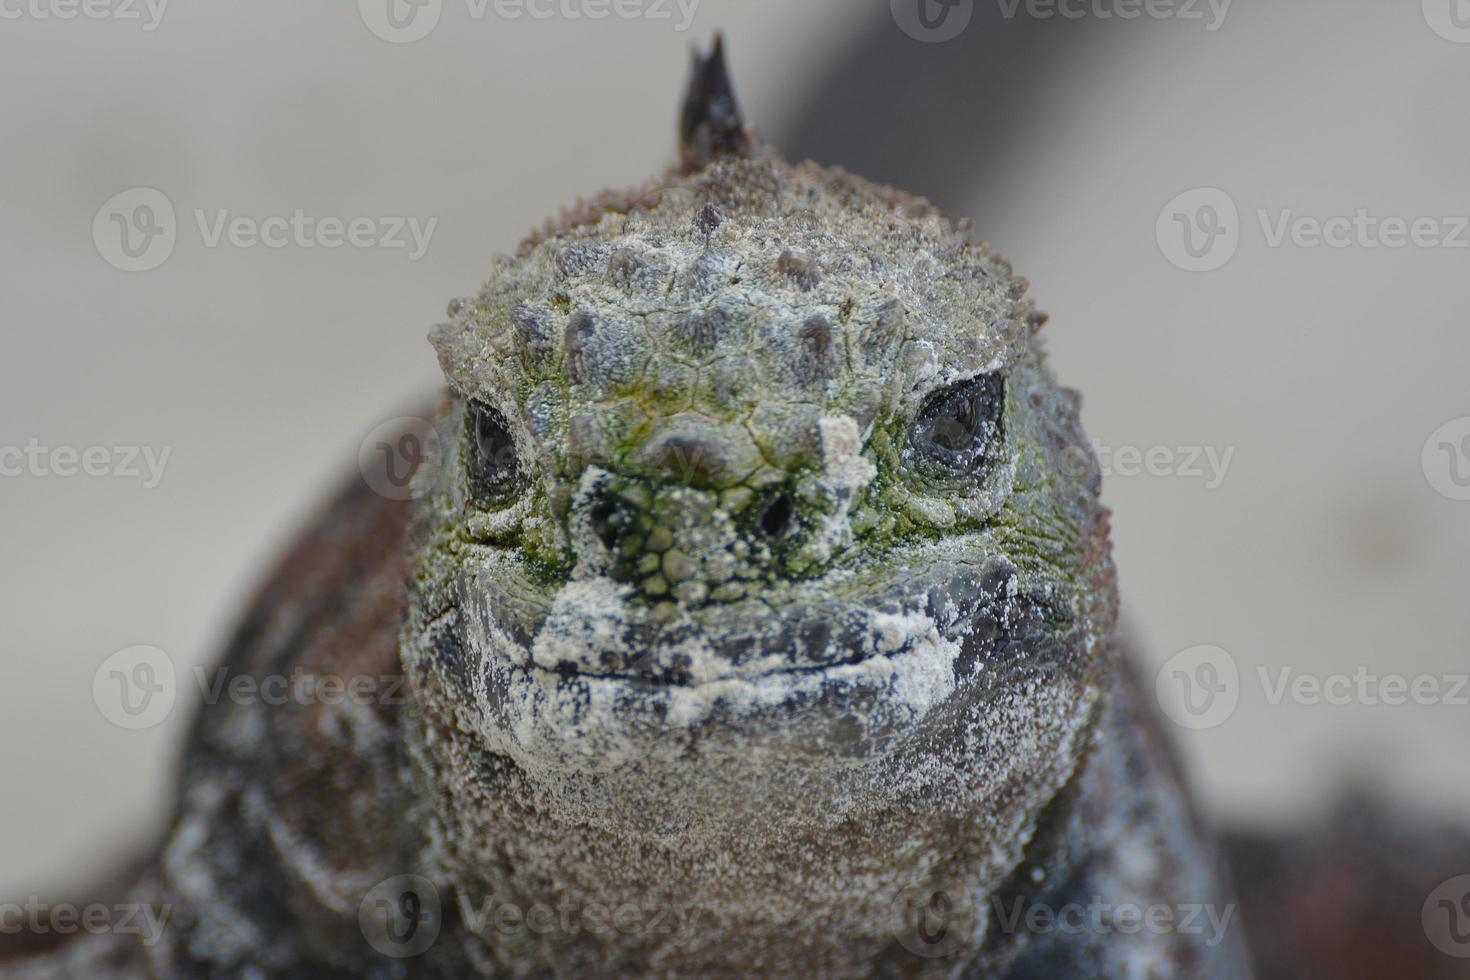 iguana marinha close-up foto